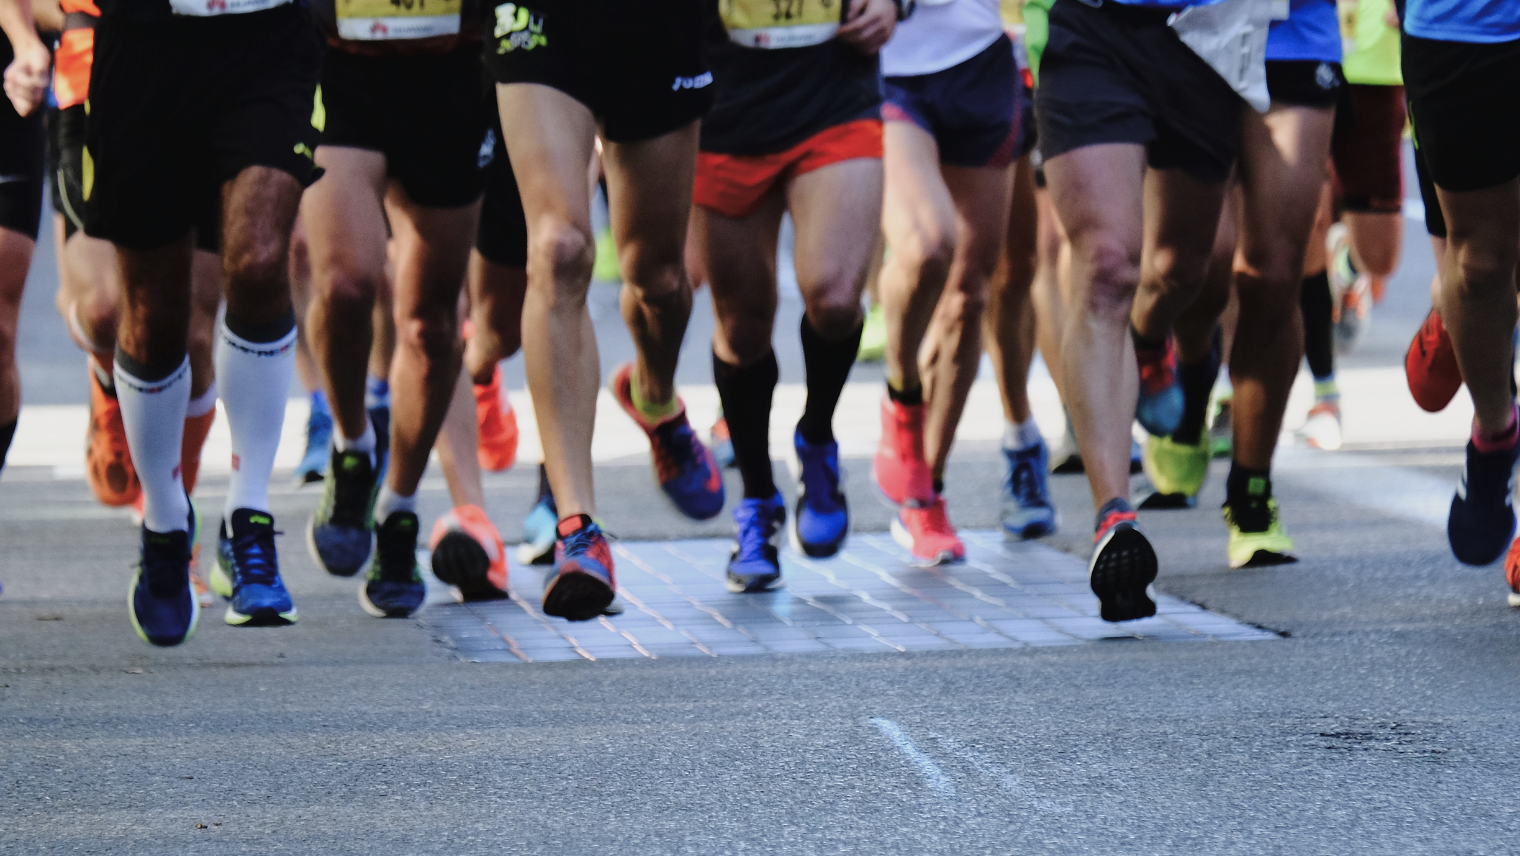 Runners running a race